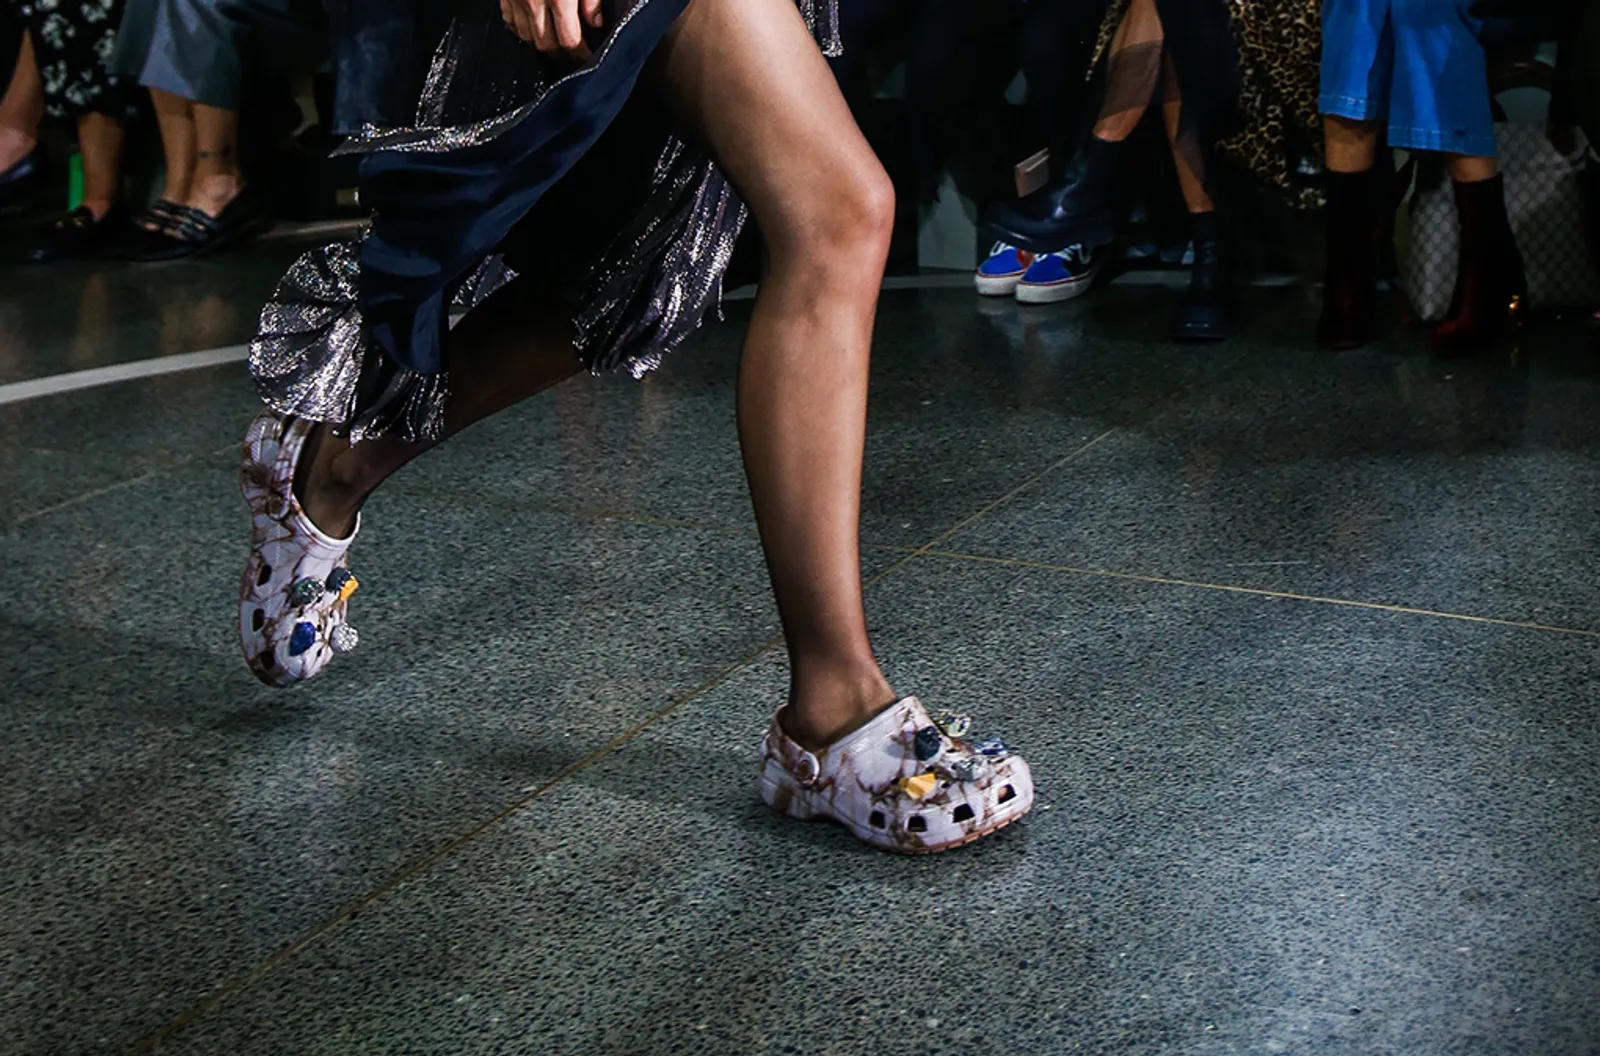 Dianggap "Sepatu Jelek" Kini Croc Tampil Lebih High Fashion!